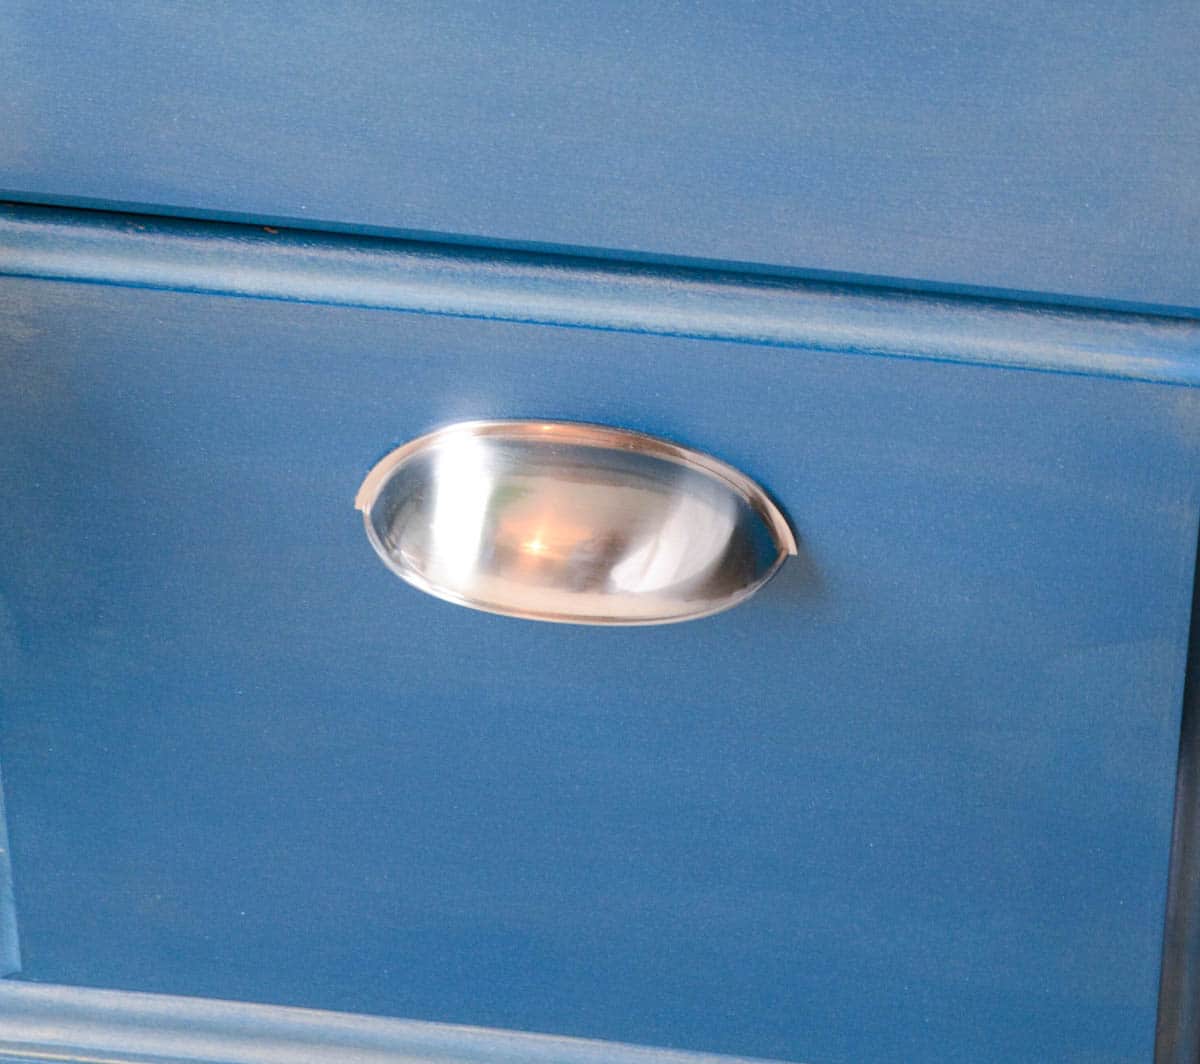 large silver pulls on blue desk drawer.